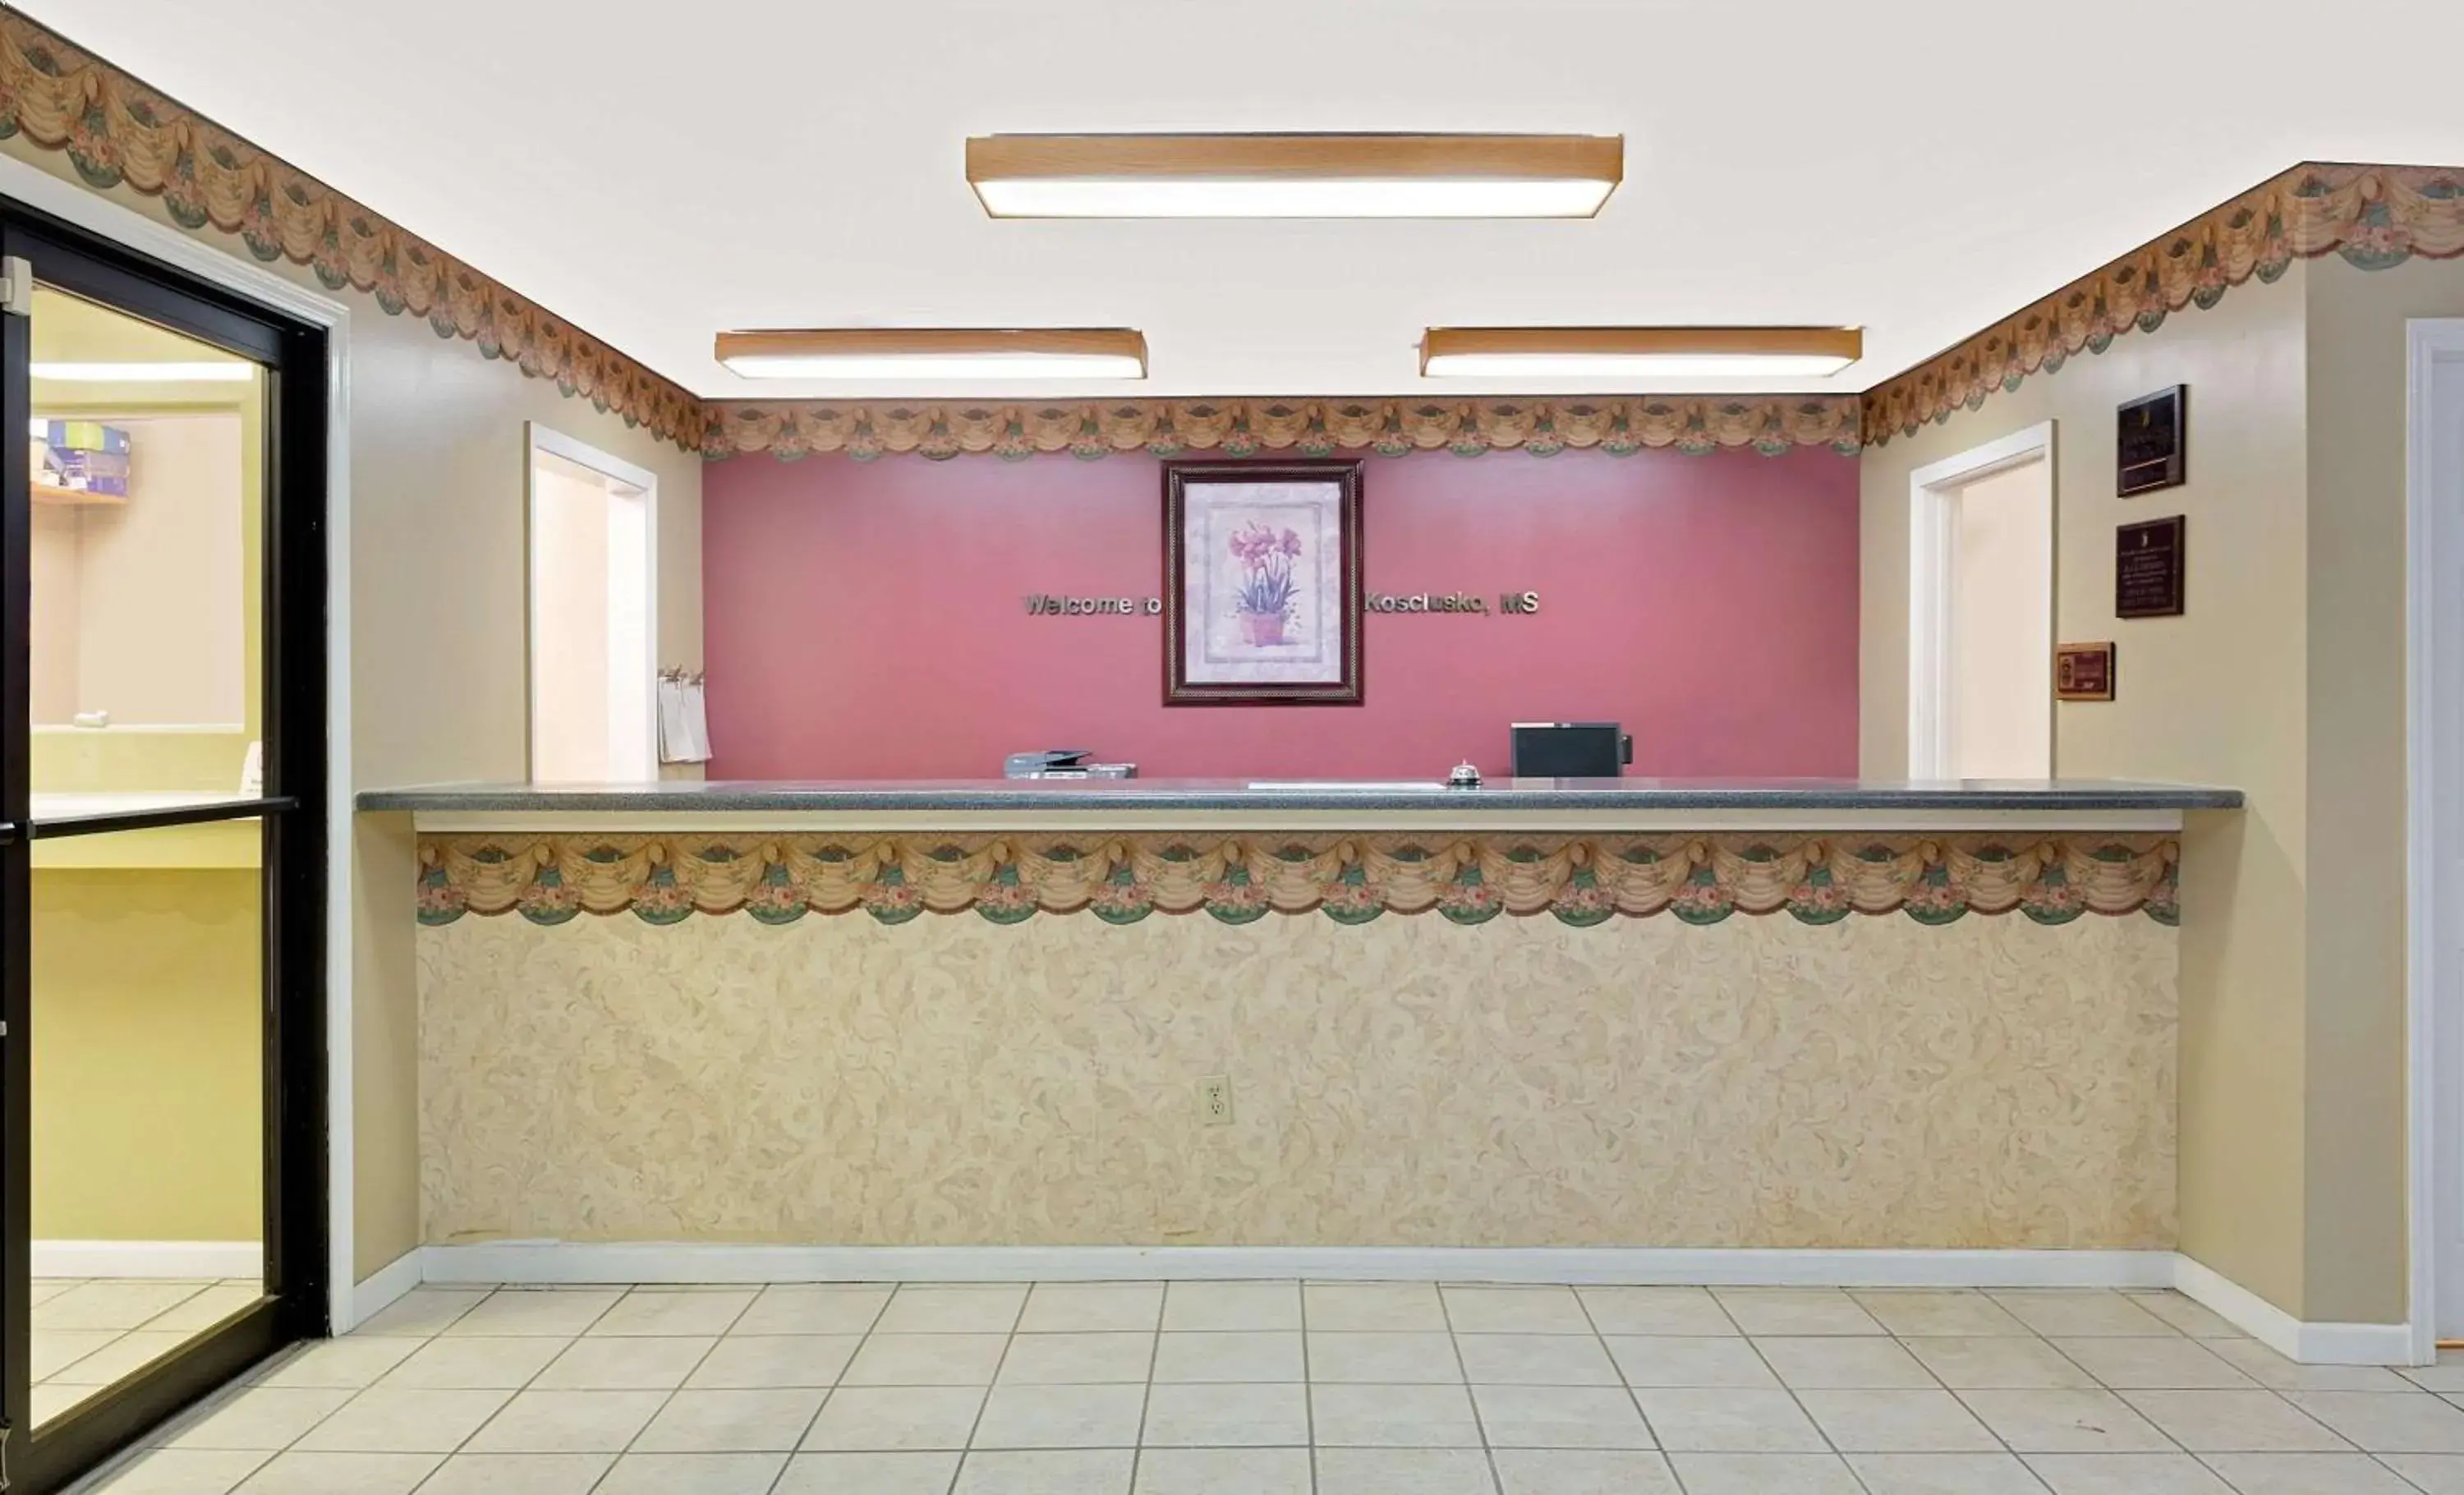 Lobby or reception, Lobby/Reception in Super 8 by Wyndham Kosciusko